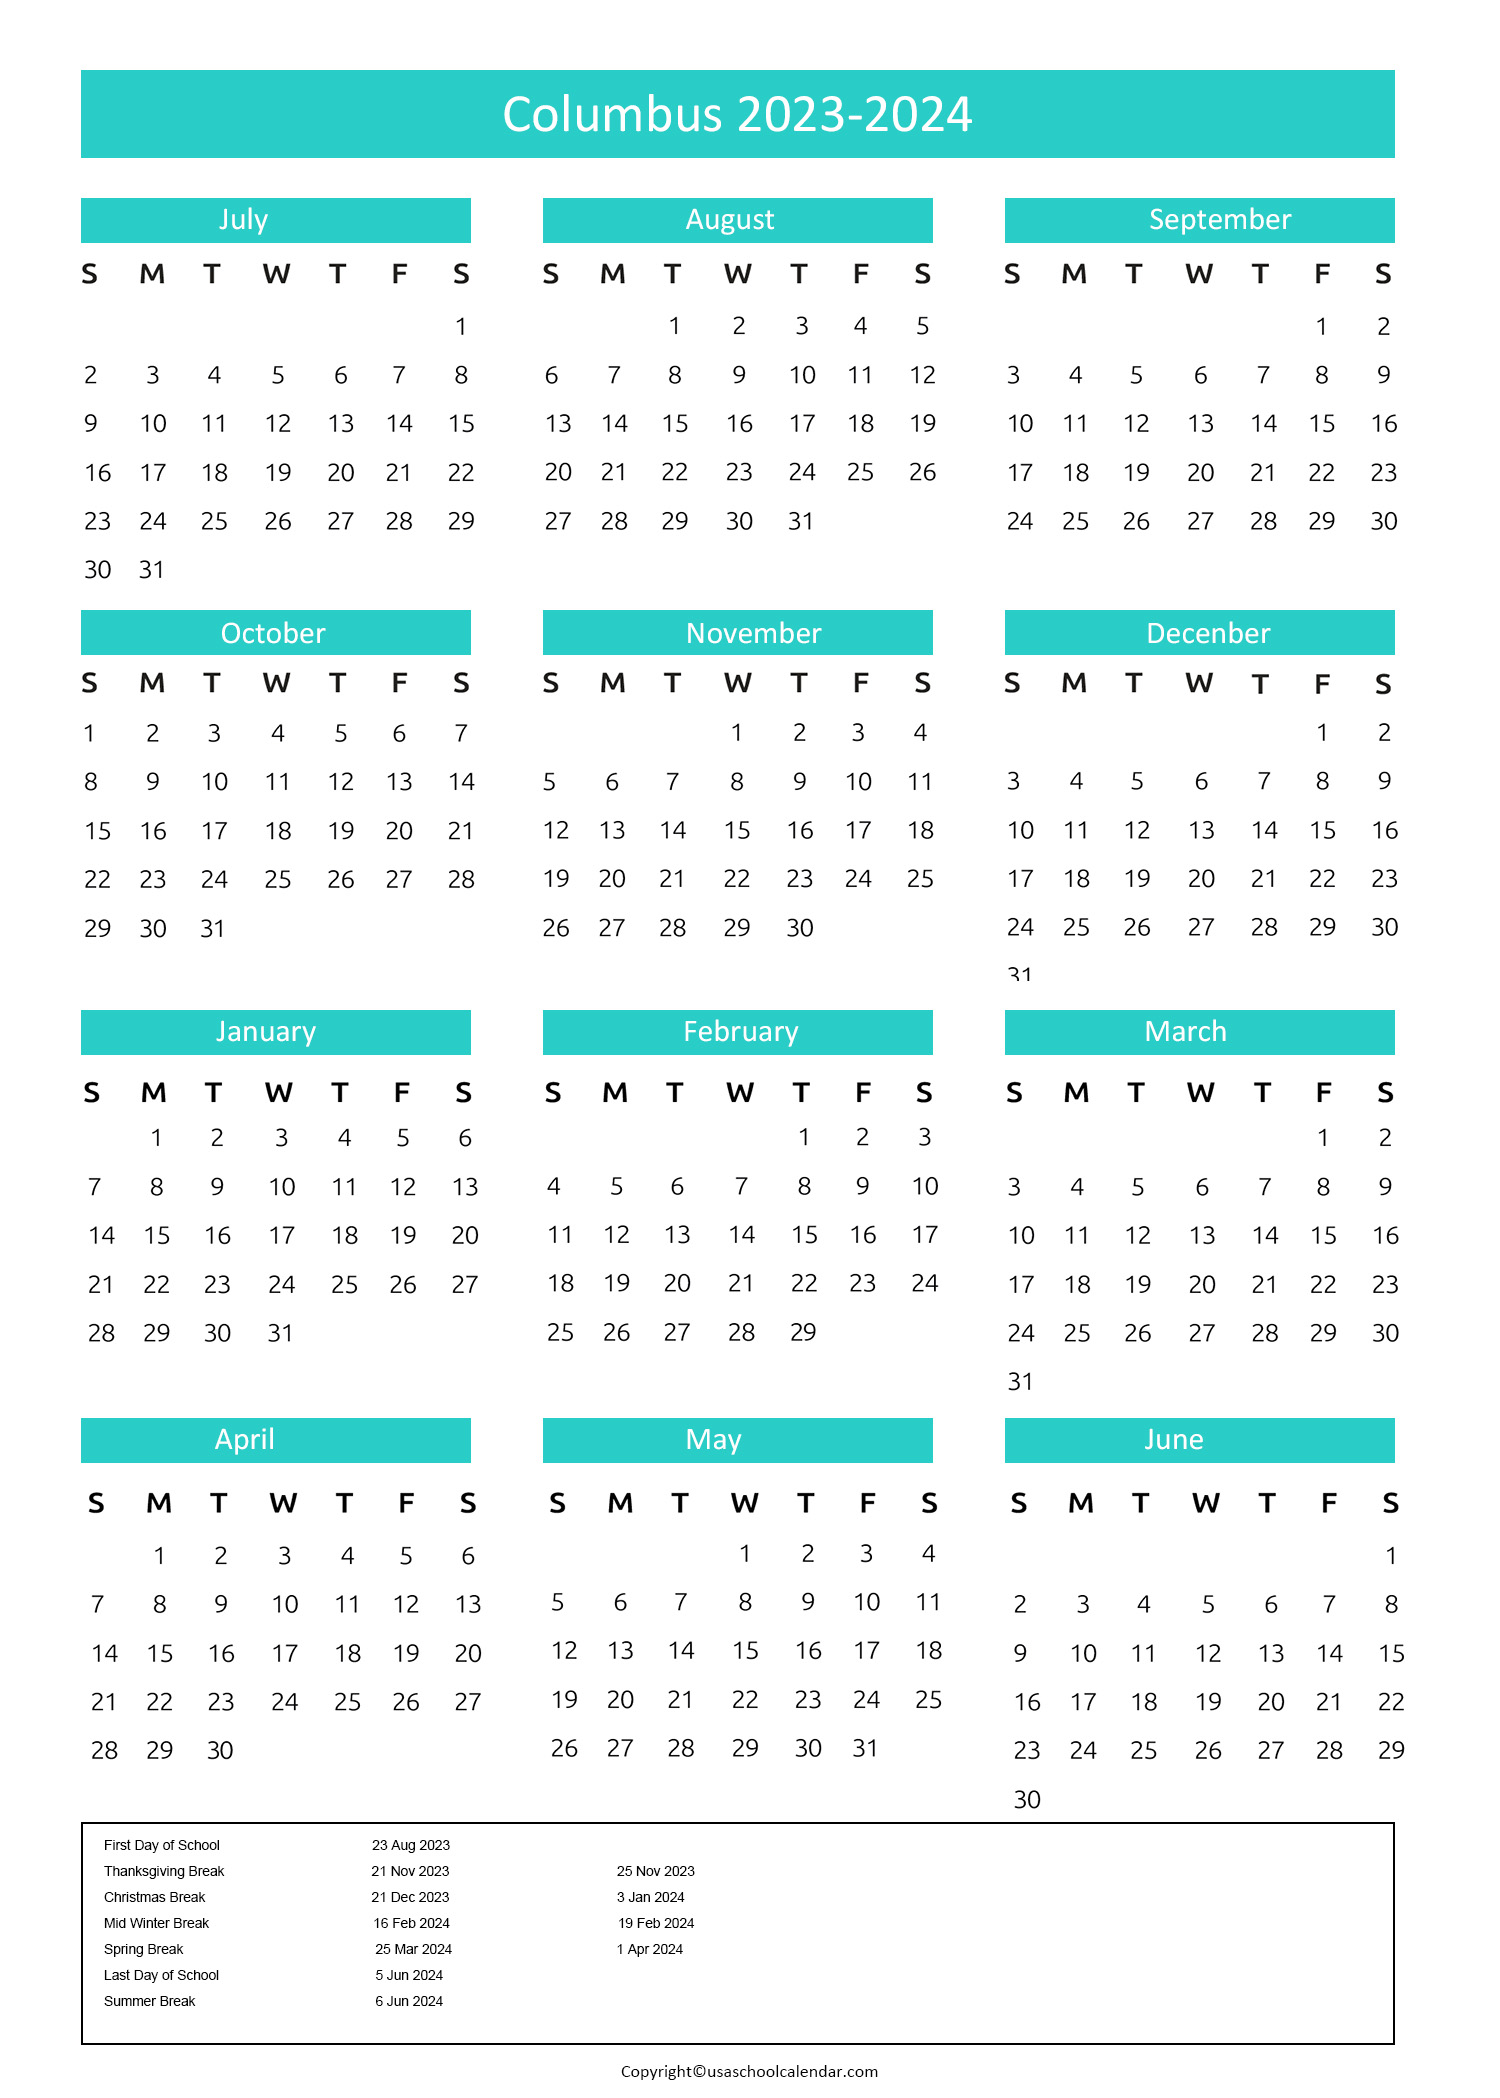 Columbus City Schools Calendar & Holidays 20232024 [CCS]